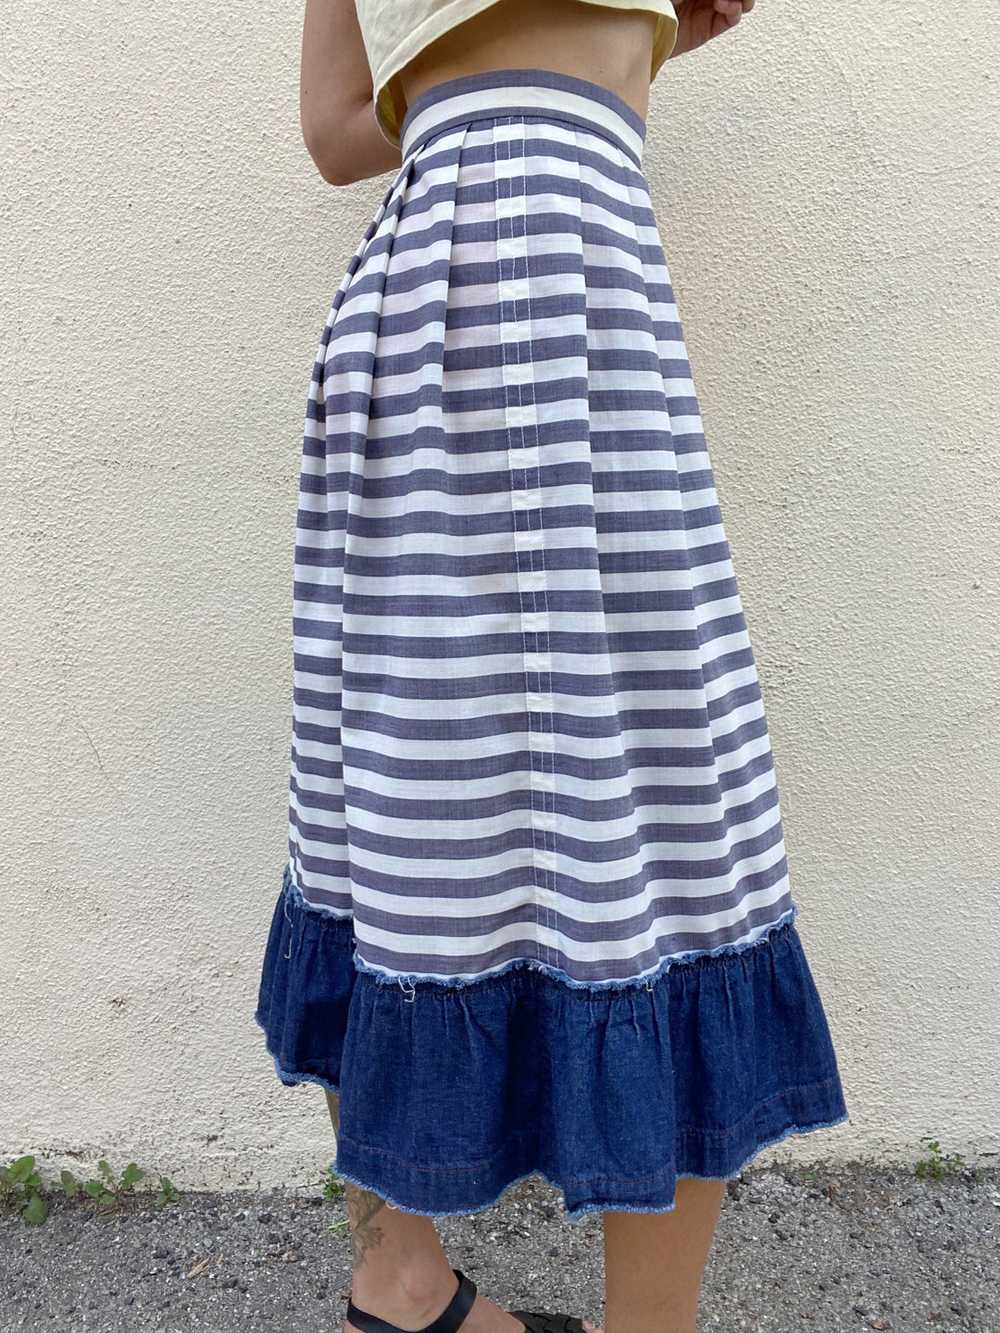 Comme De Garcons Striped Cotton Skirt - image 7